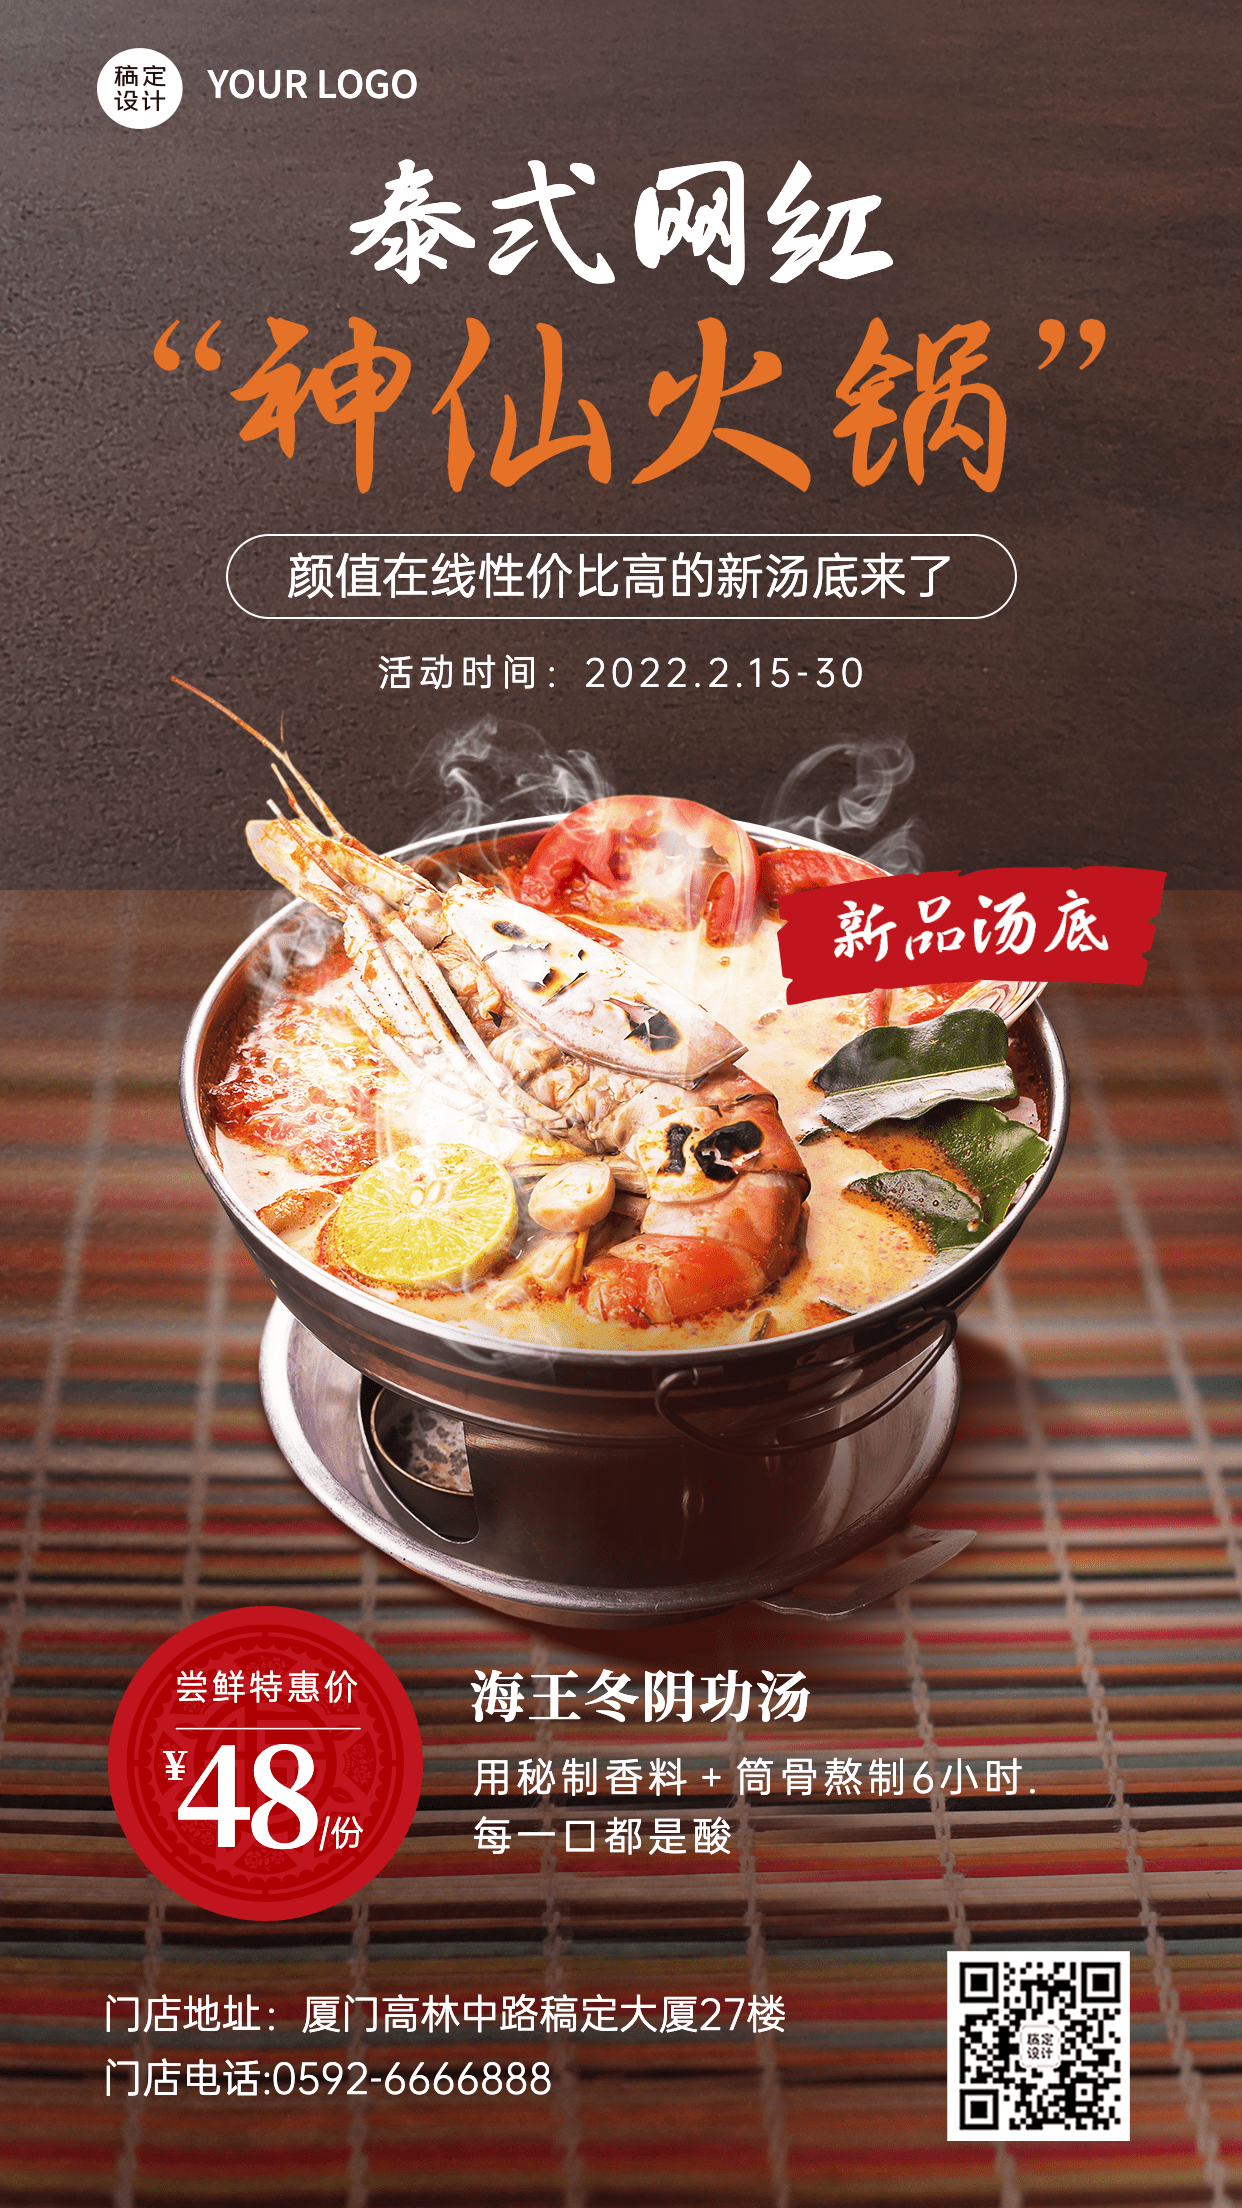 餐饮泰式火锅菜品上新合成手机海报预览效果